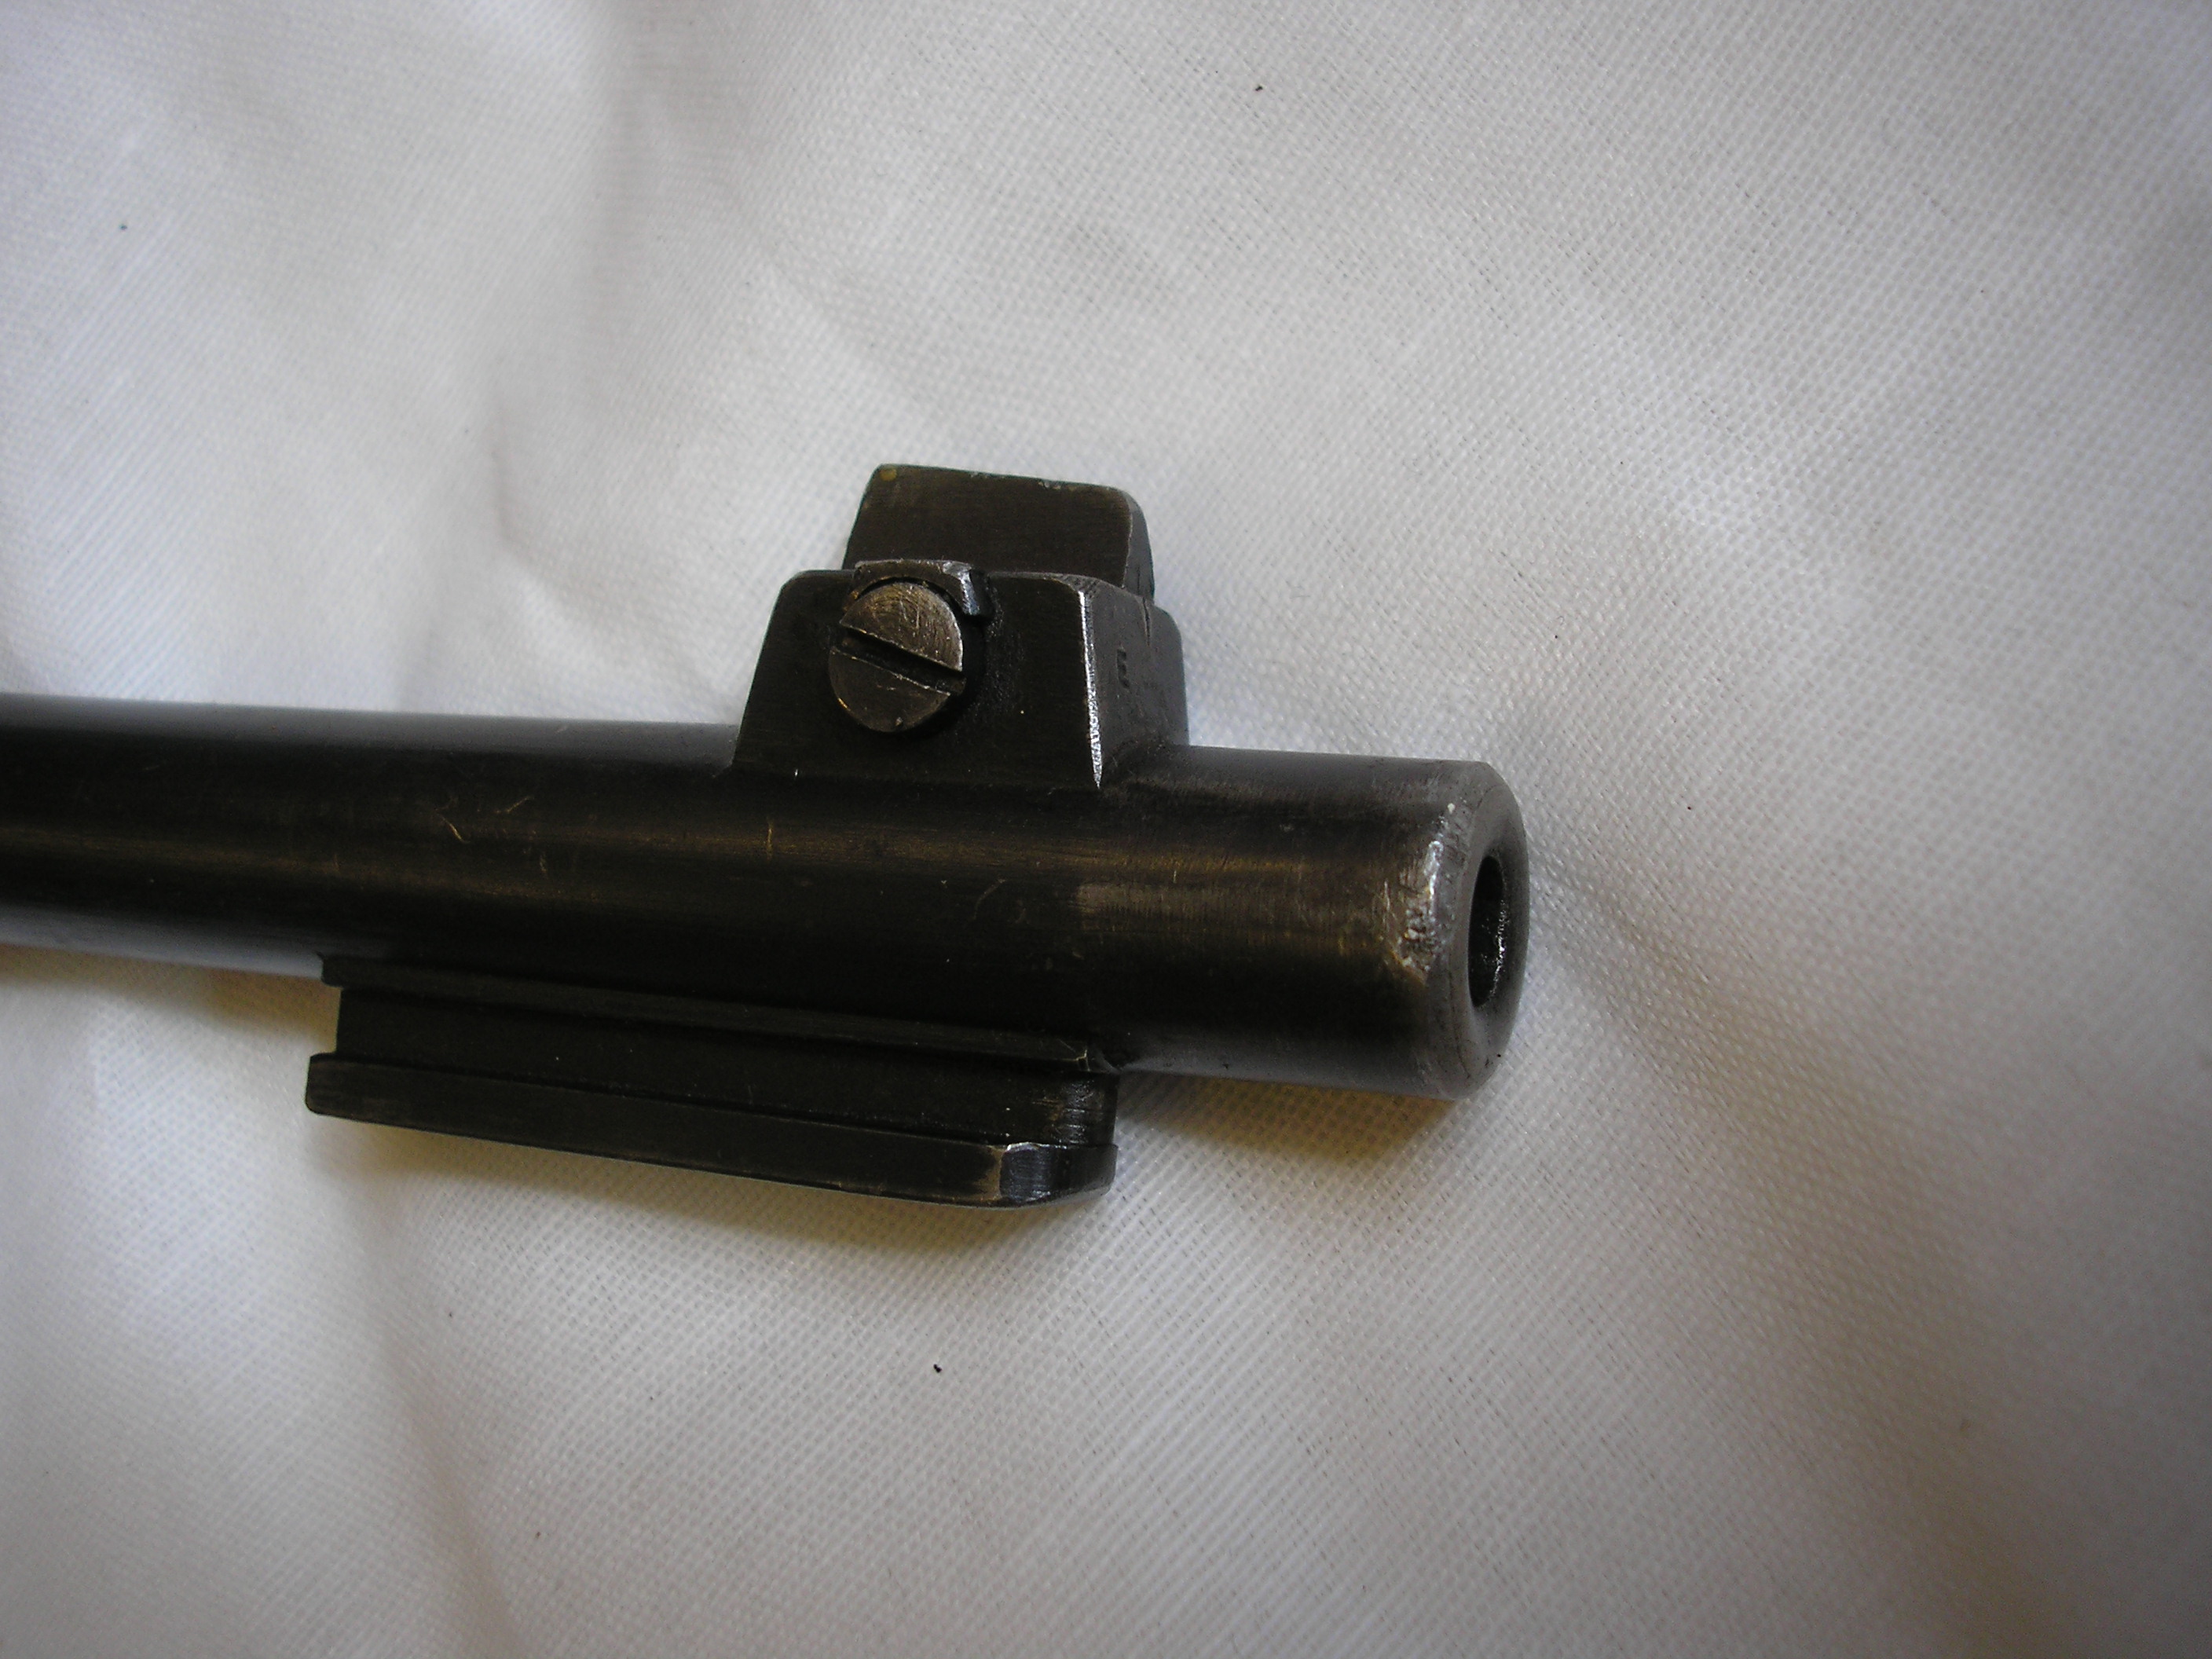 ./guns/rifle/bilder/Rifle-Kongsberg-Krag-M1894-1915-privat-25882-6.JPG